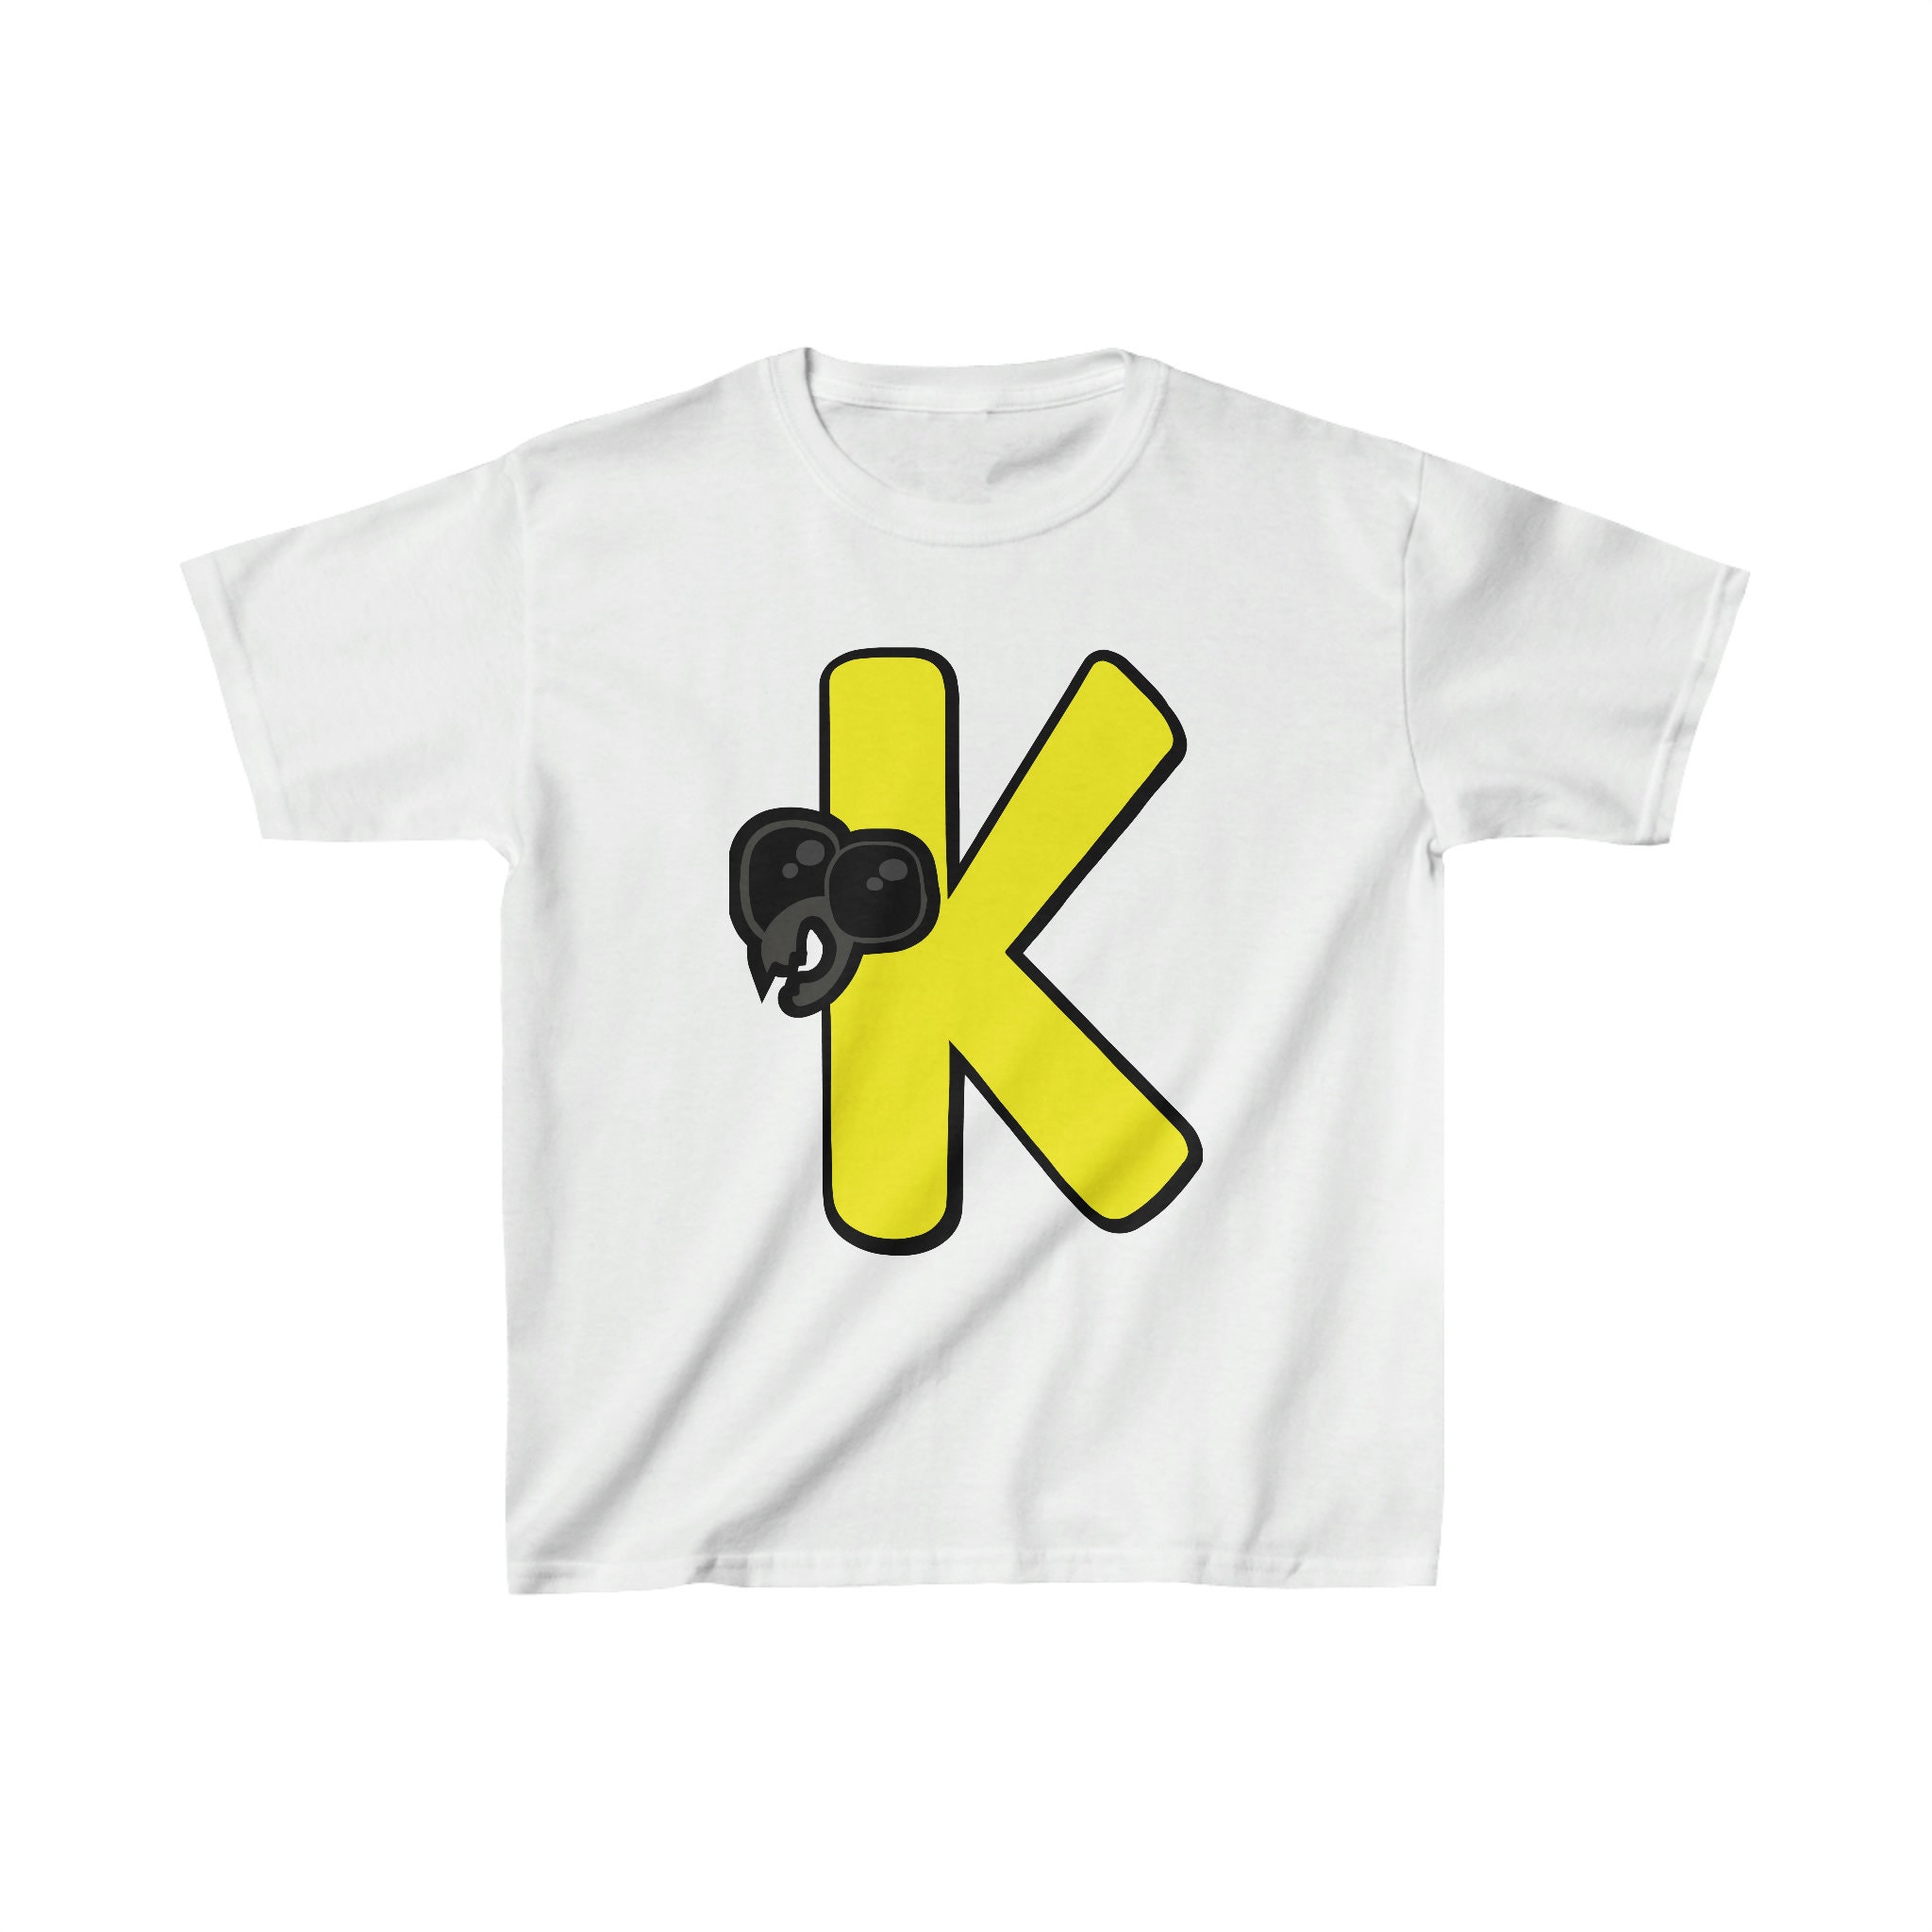  Emotion Letter K Alphabet Lore For Boys, Girls T-Shirt